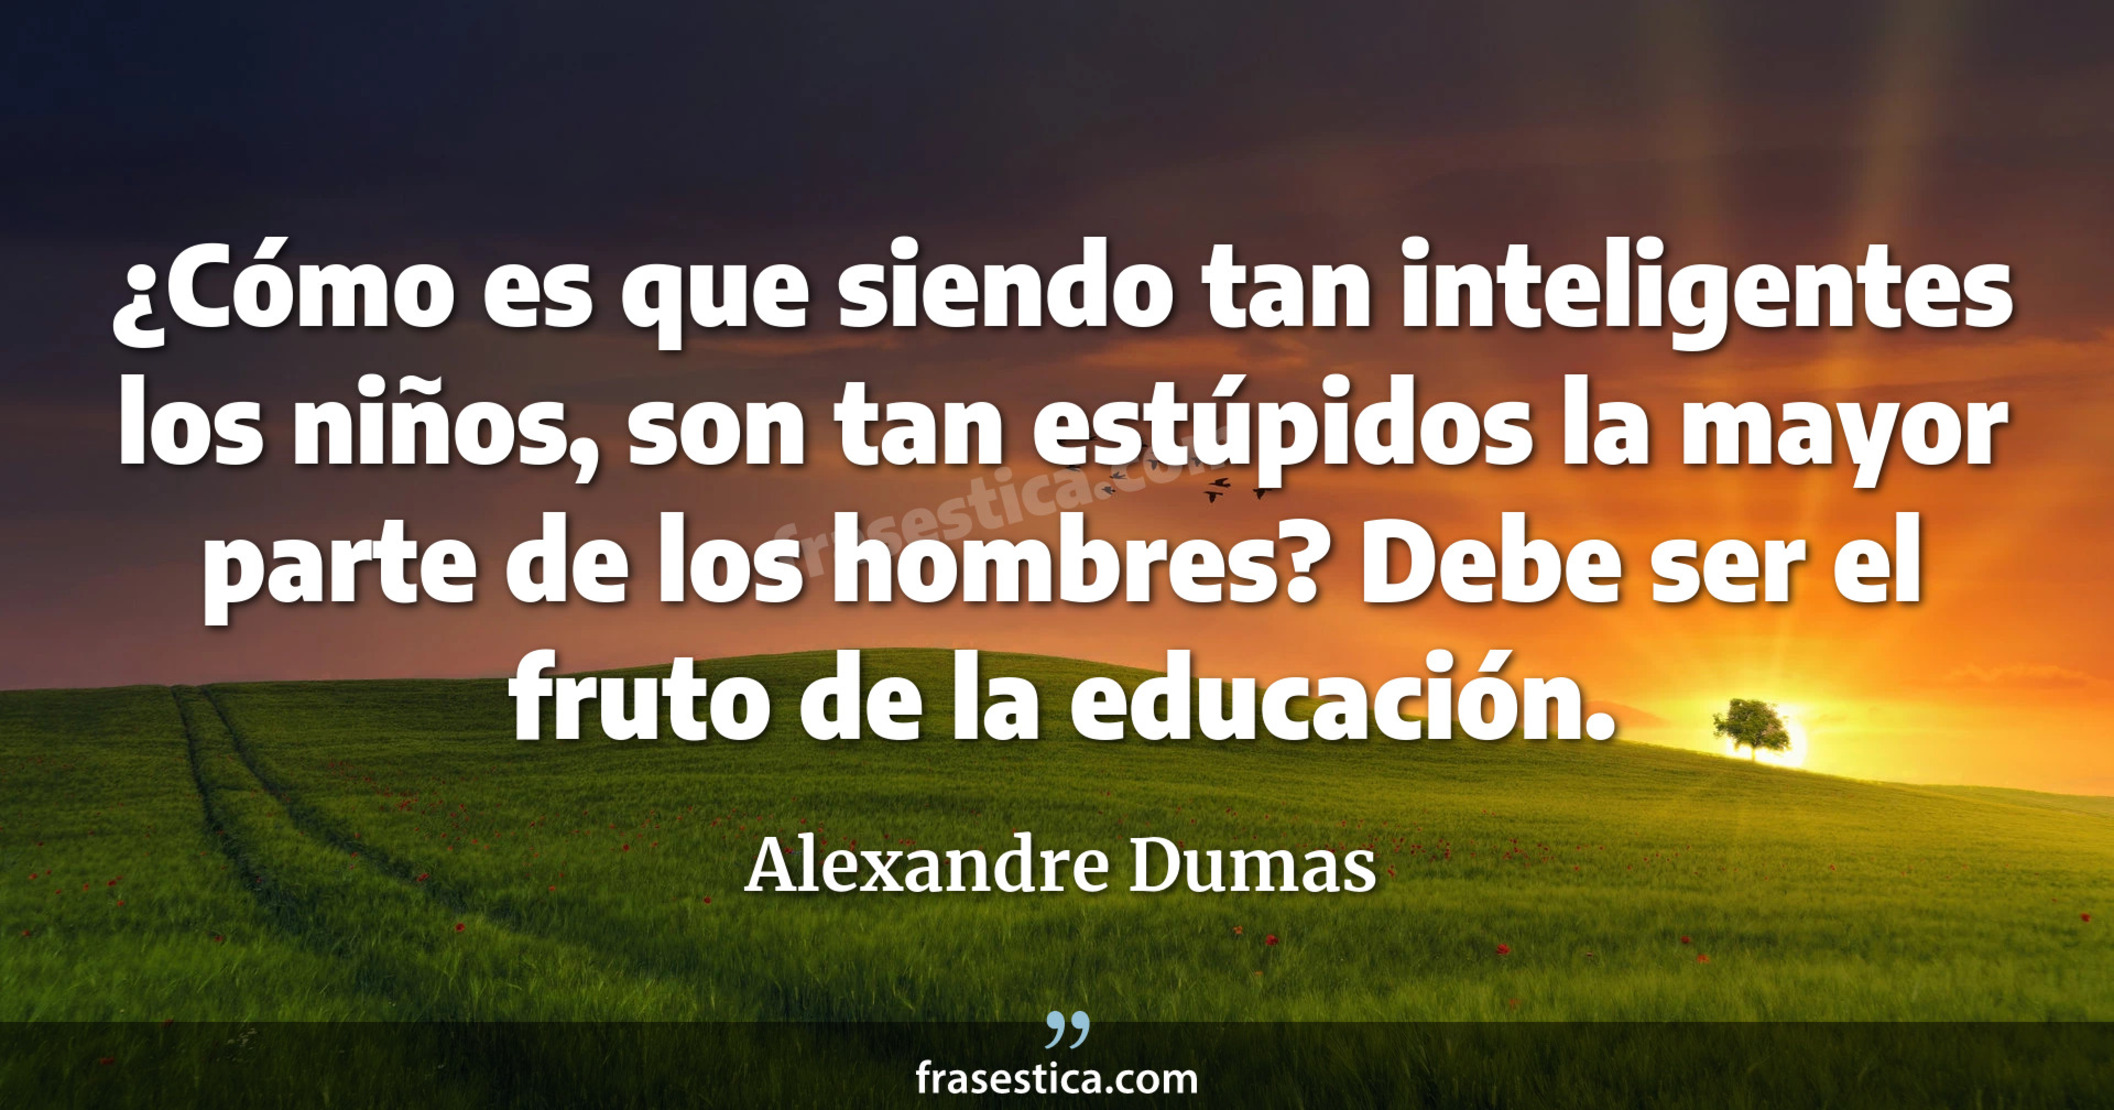 ¿Cómo es que siendo tan inteligentes los niños, son tan estúpidos la mayor parte de los hombres? Debe ser el fruto de la educación. - Alexandre Dumas